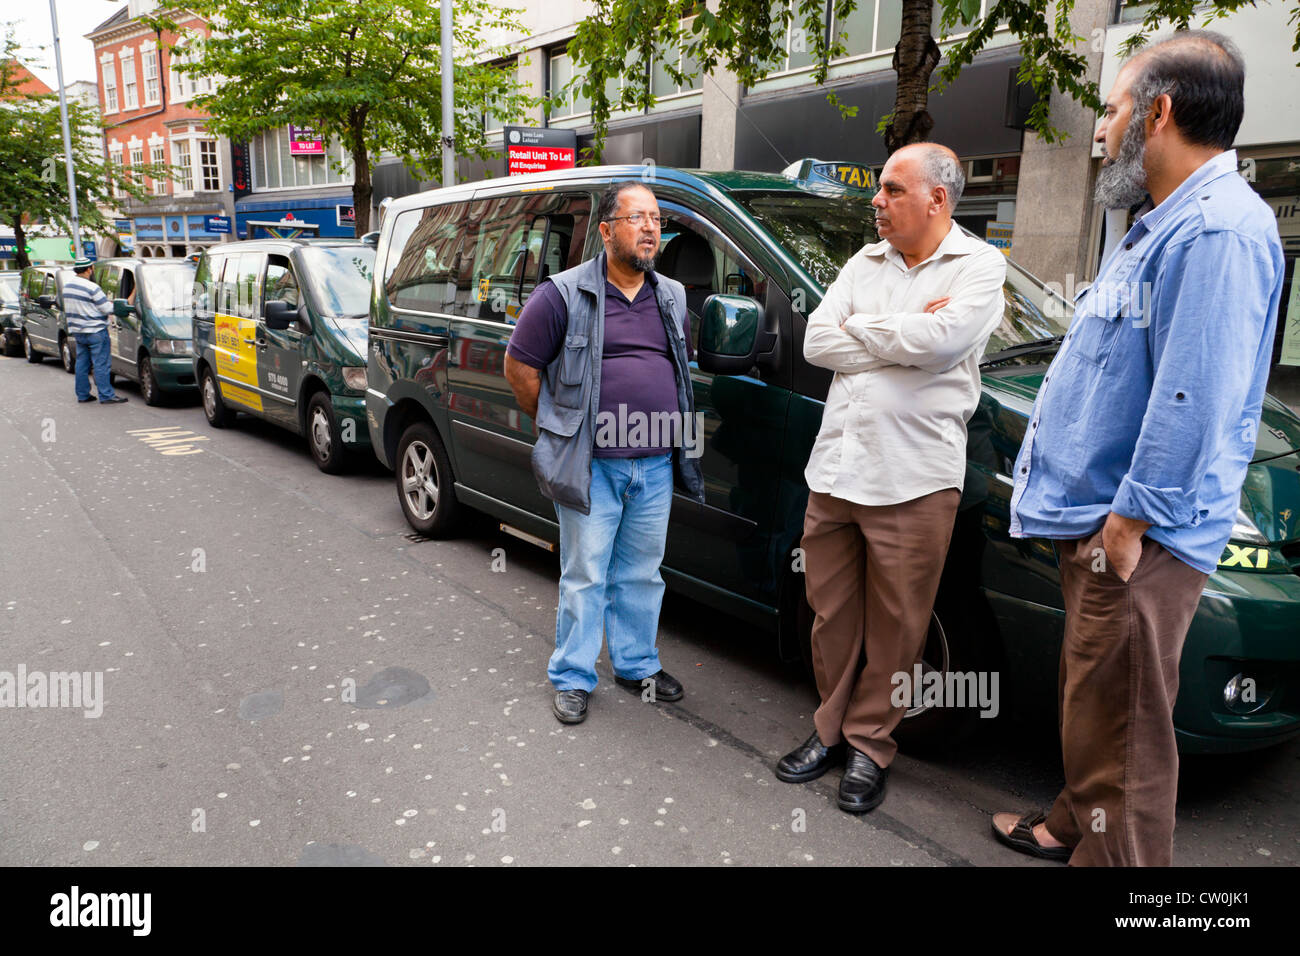 Hay una parada de taxis. Los taxistas esperando una tarifa junto a sus taxis, en el centro de la ciudad de Nottingham, Inglaterra, Reino Unido. Foto de stock